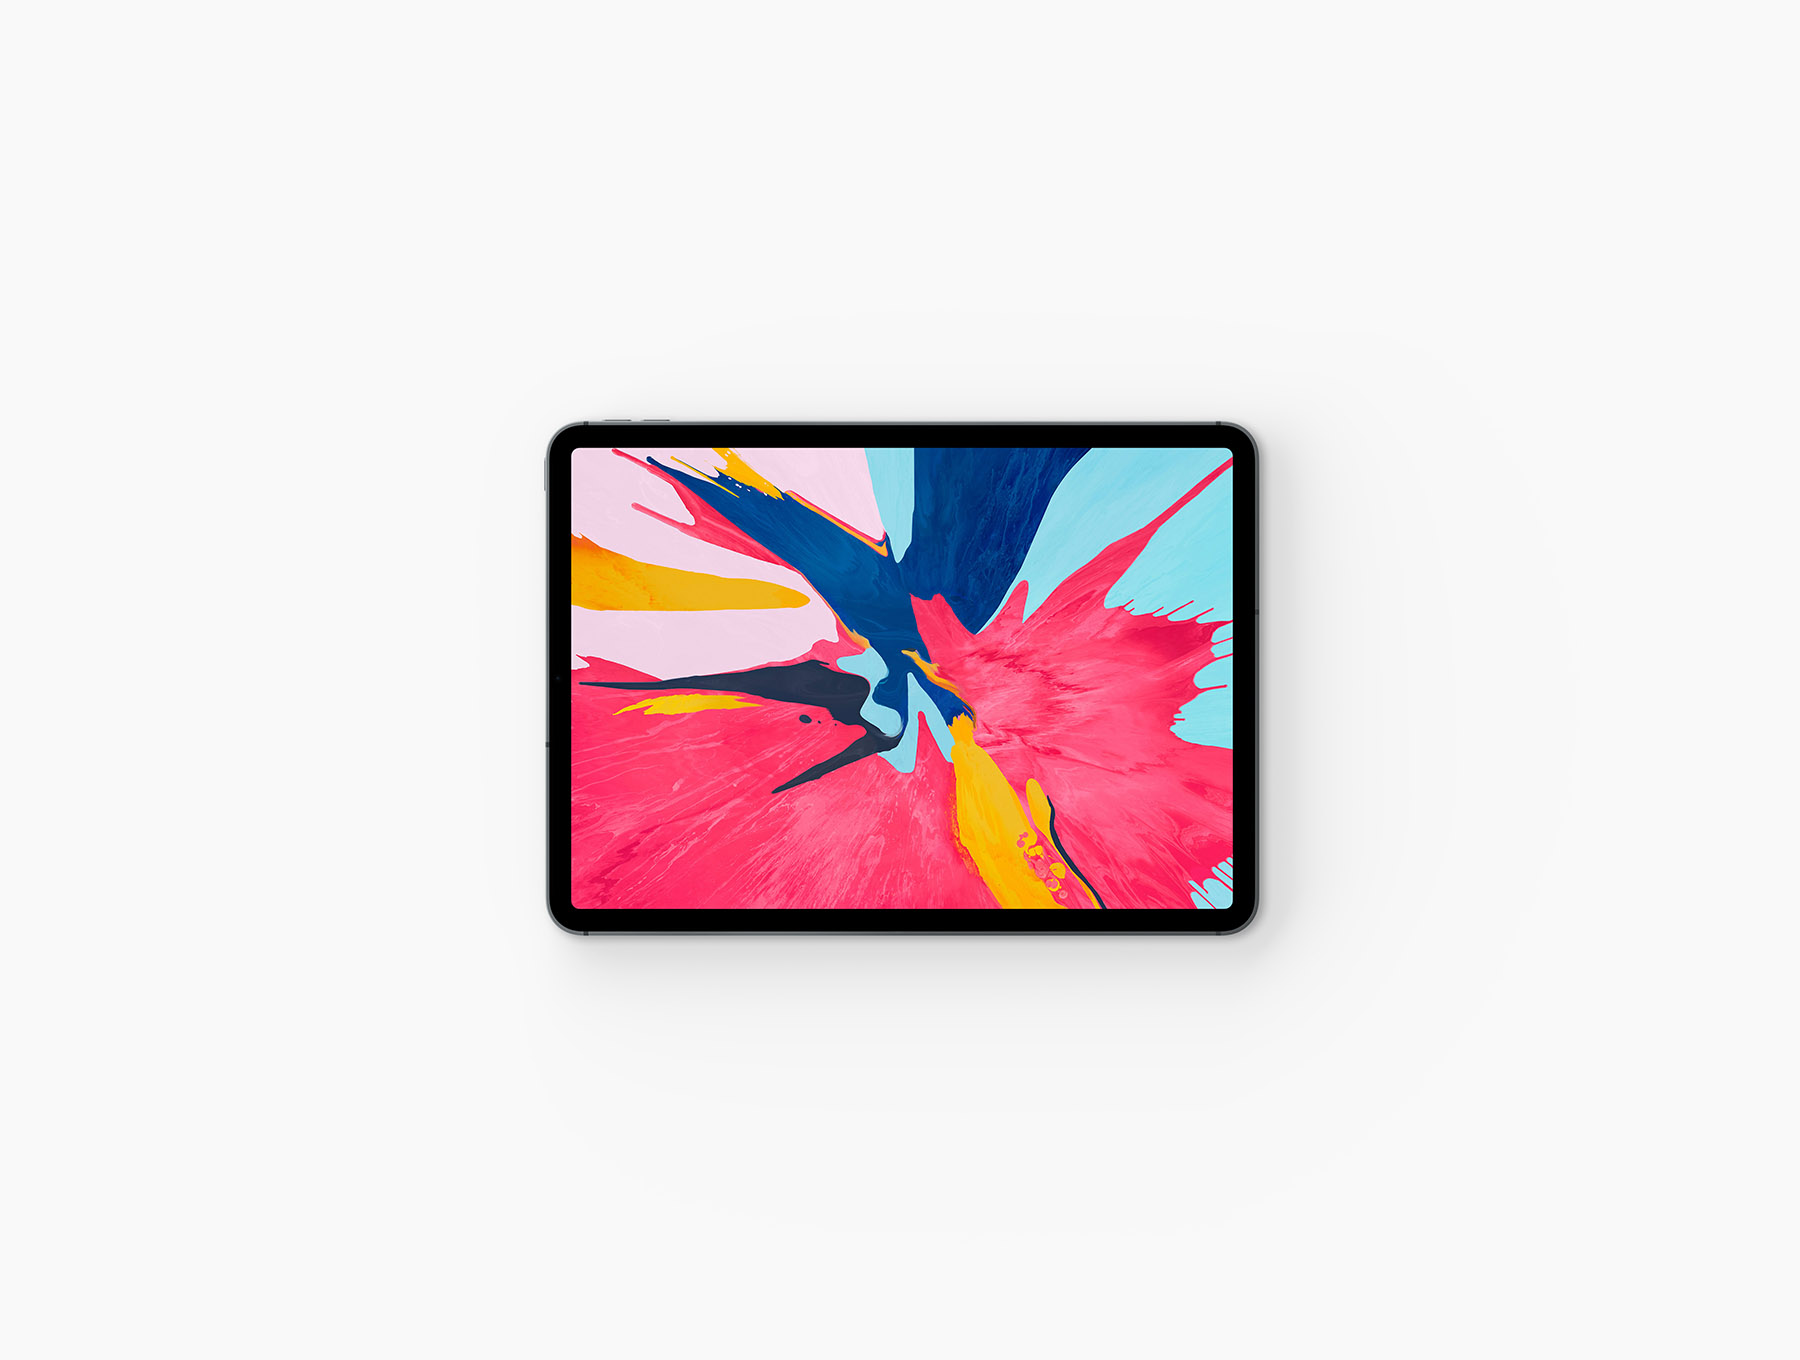 iPad Pro 2018展示样机下载 [PSD]插图(2)